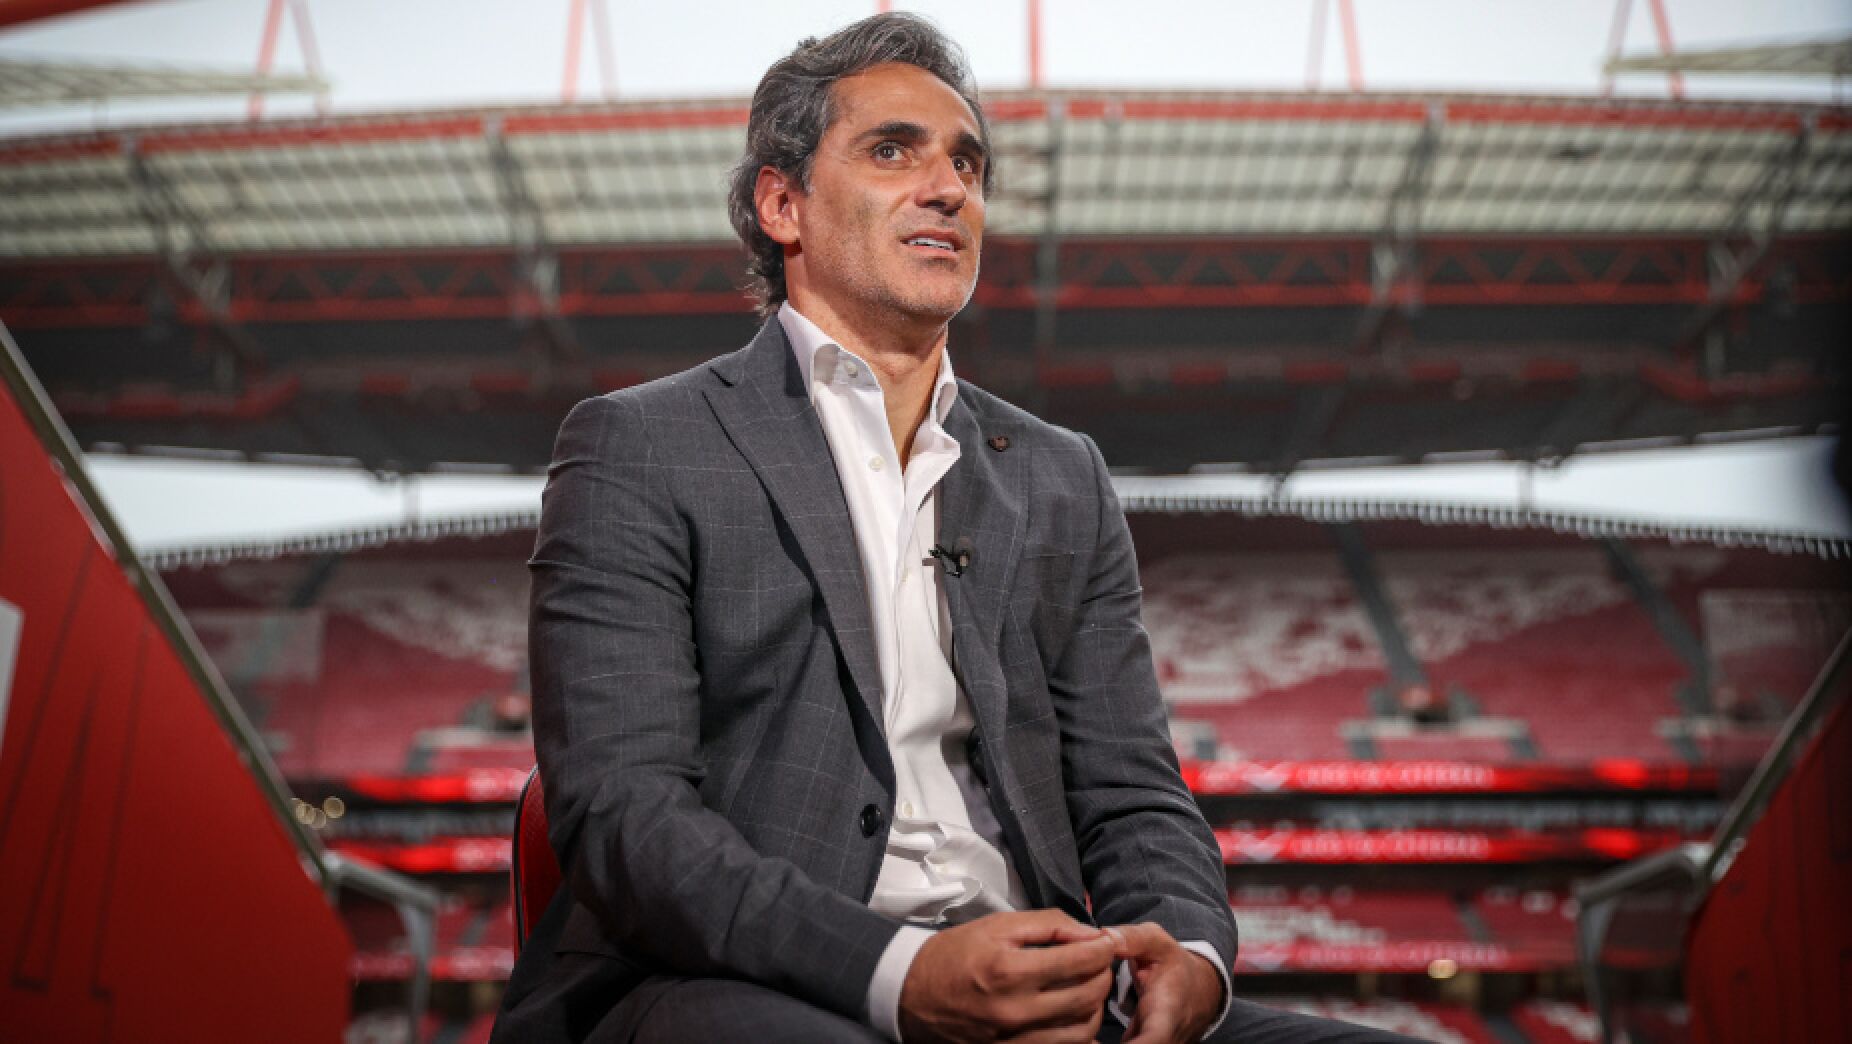 Jonas sobre Arthur Cabral: «Jogar no Benfica não é fácil»